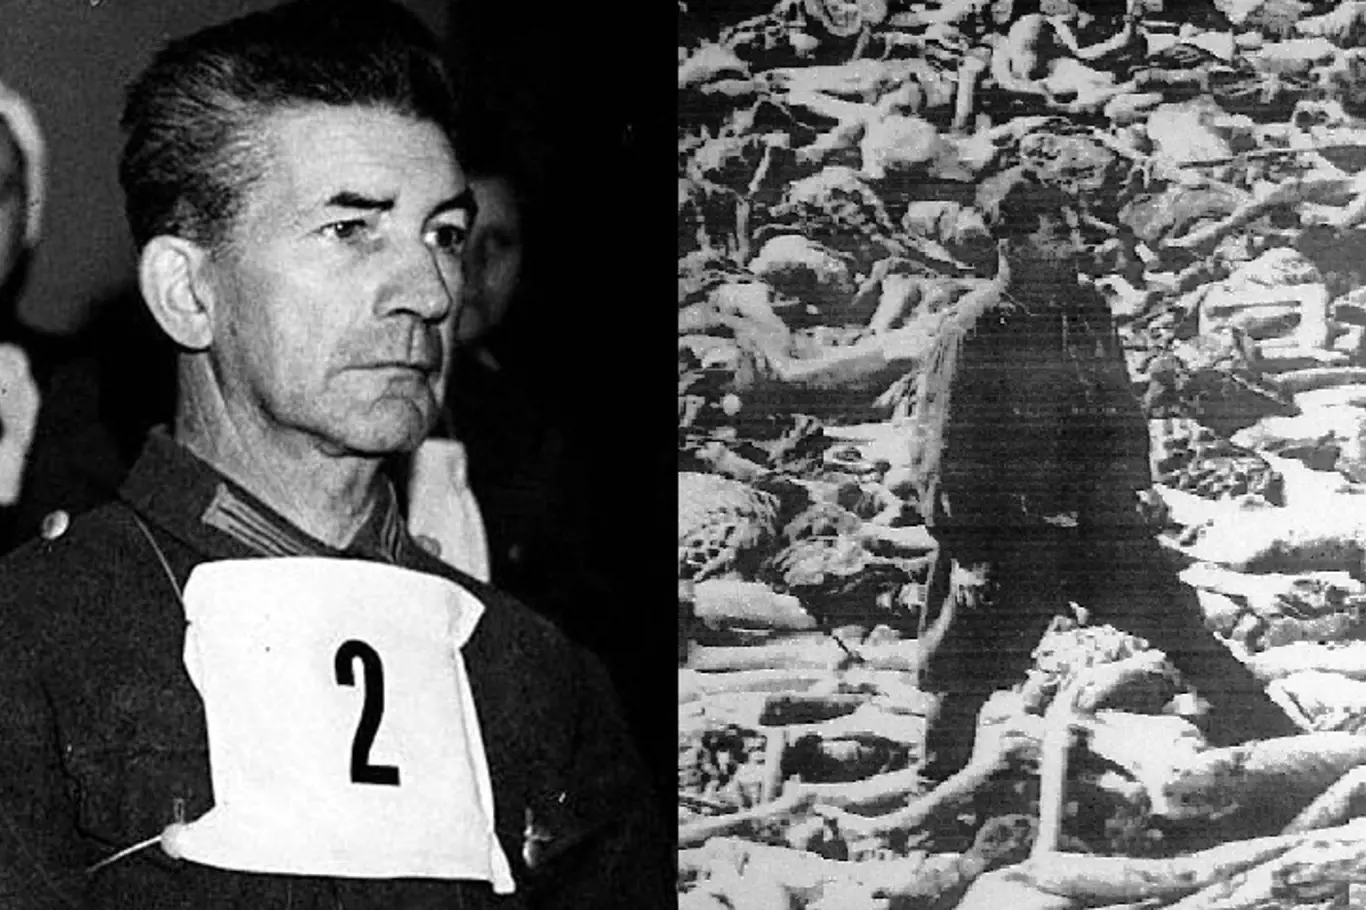 Fritz Klein byl během druhé světové války německý nacistický lékař odsouzený k smrti za válečné zločiny spáchané v koncentračním táboře Bergen-Belsen během holocaustu.